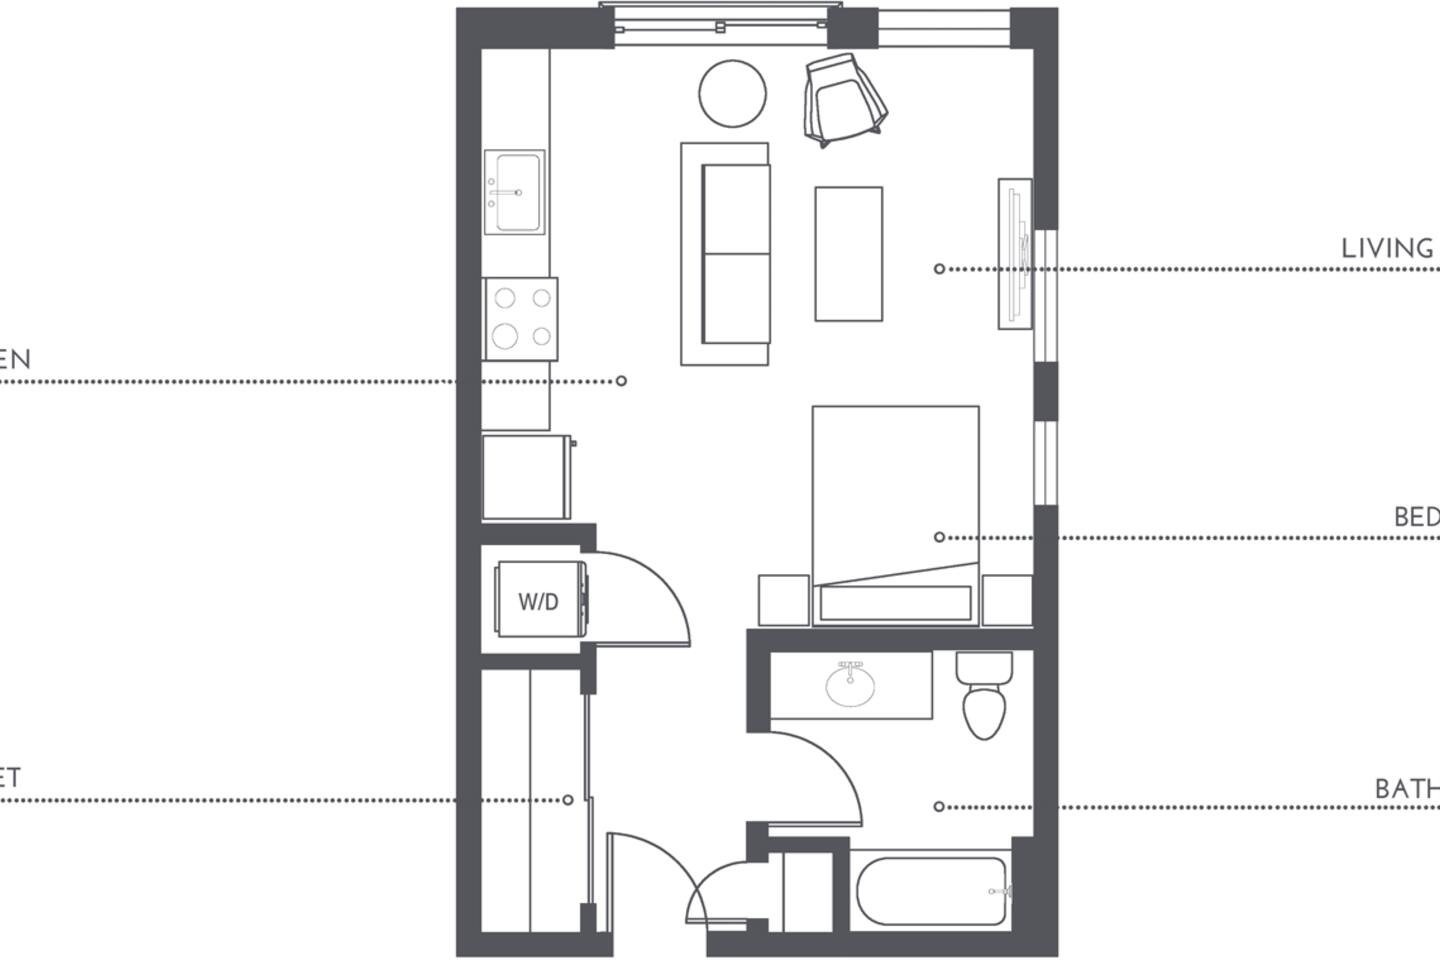 Floorplan diagram for S1.1, showing Studio